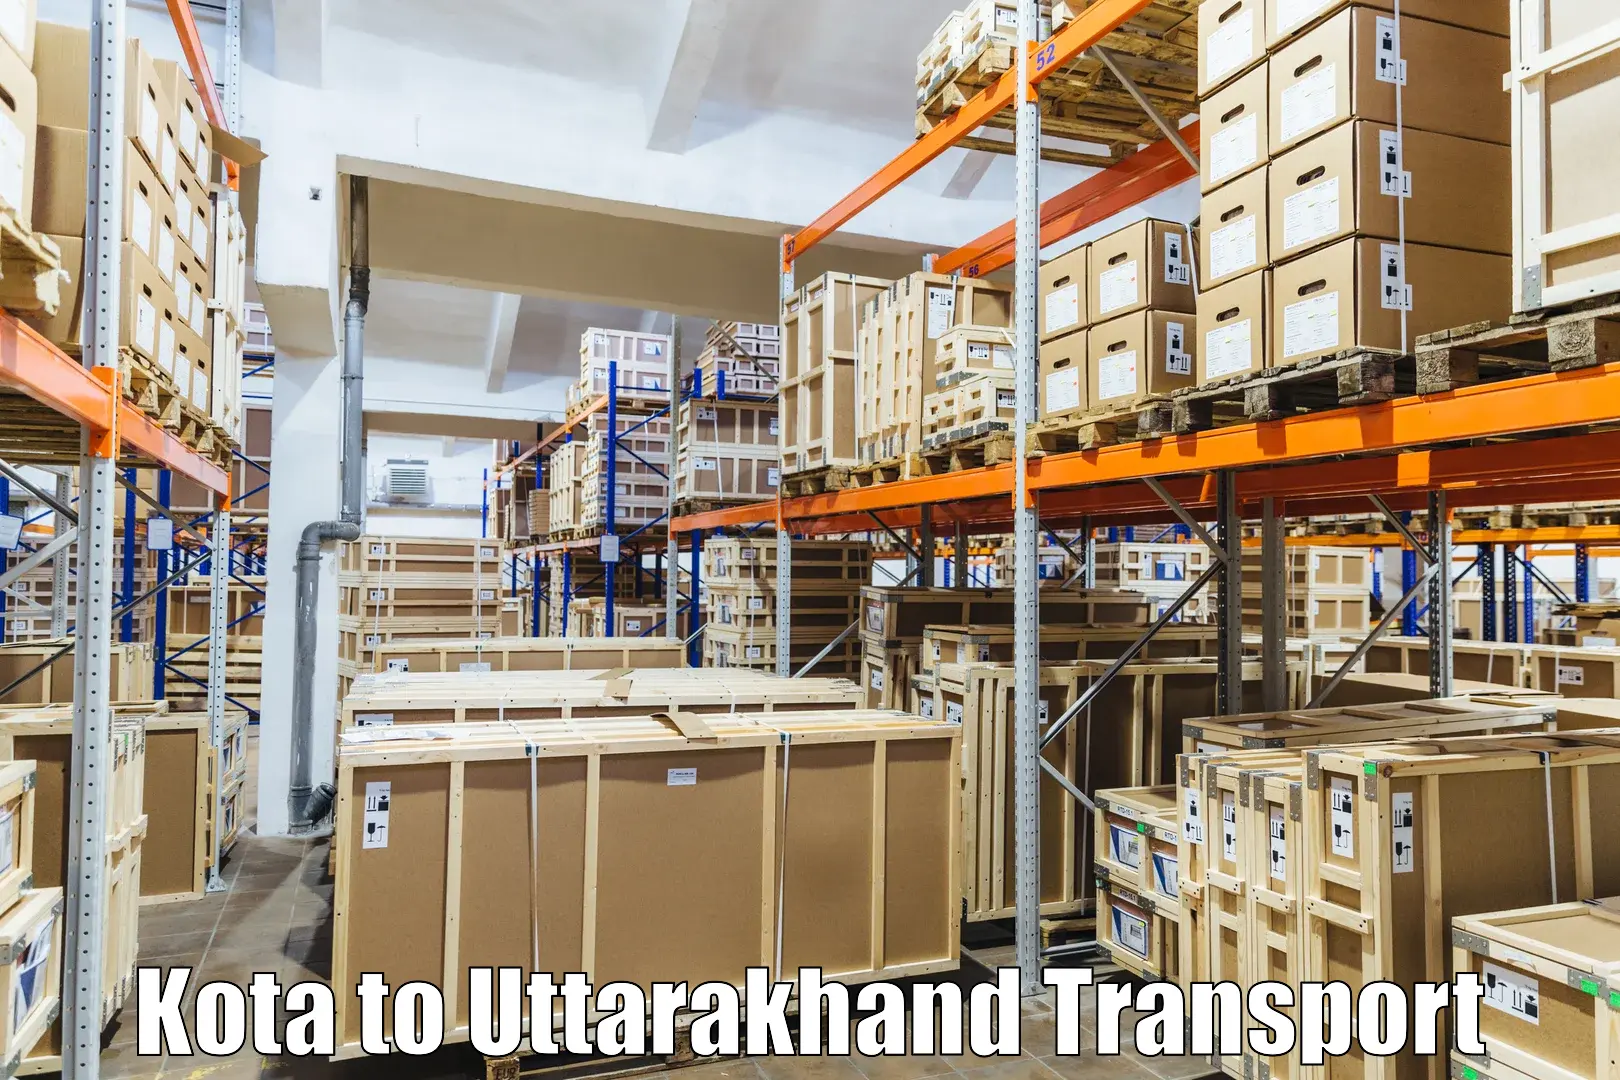 Commercial transport service Kota to Uttarakhand